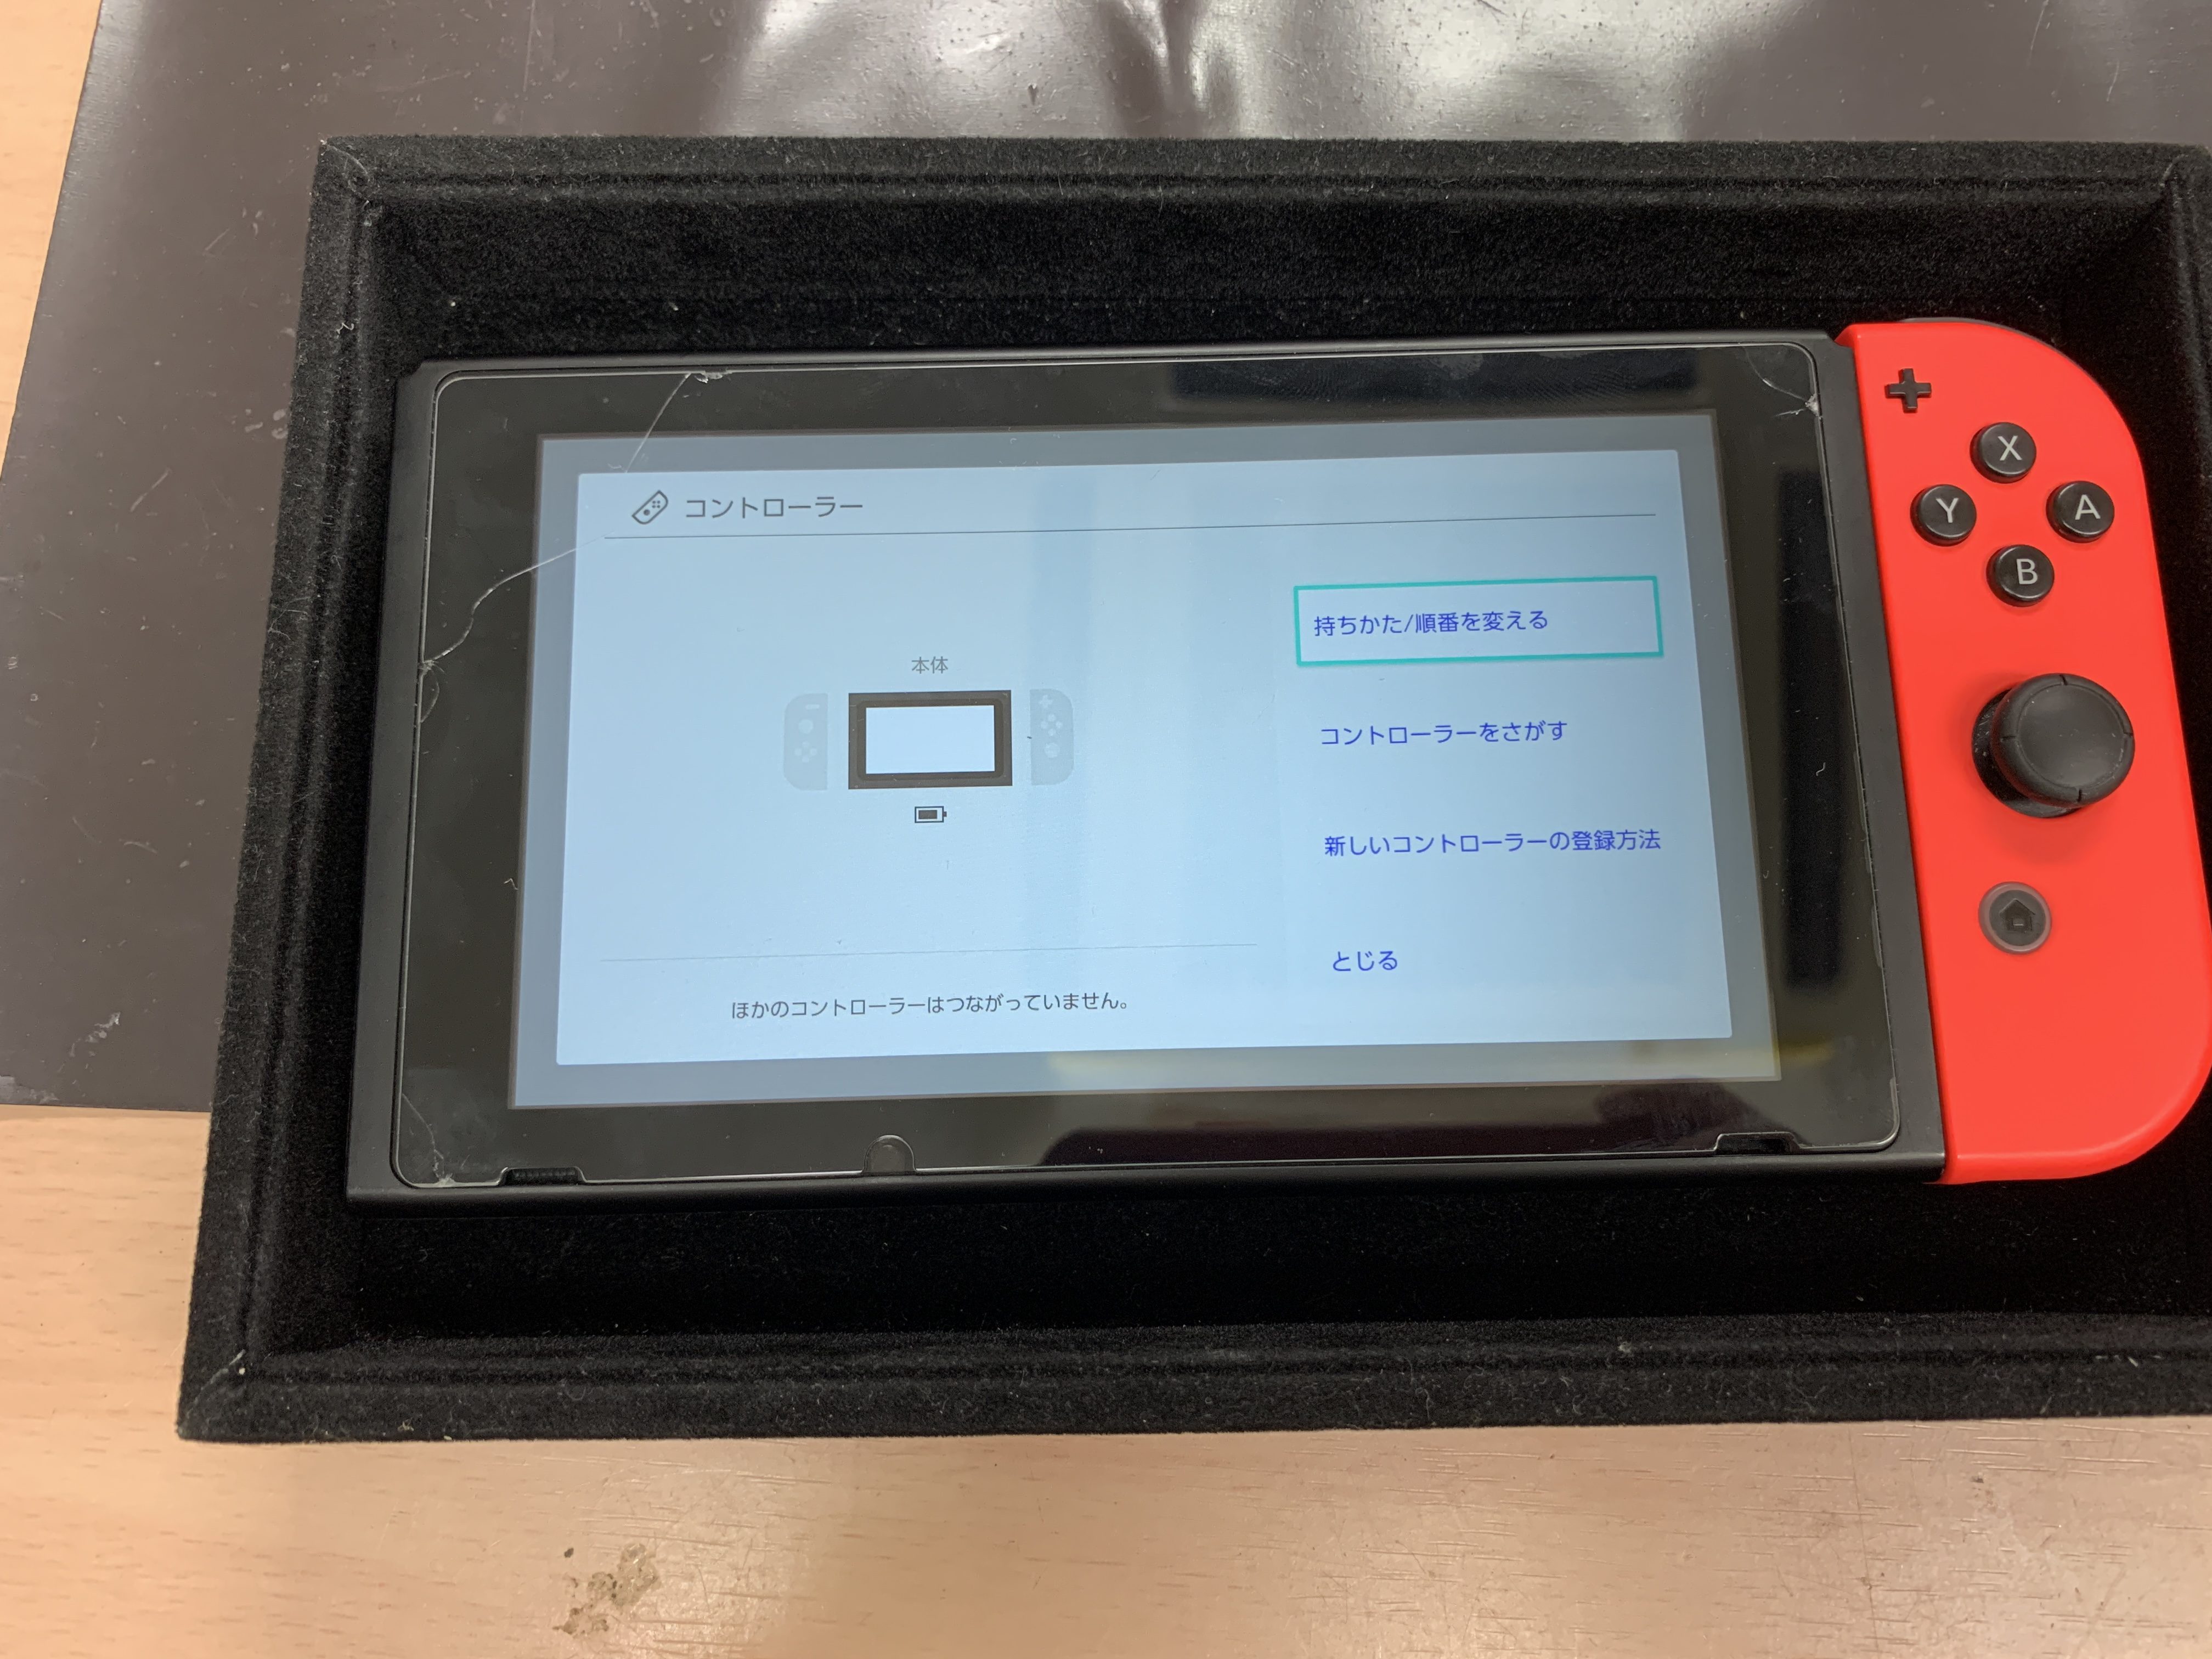 ジョイコンの右側が本体に接続しても認識がしないとswitchジョイコン右側スライダー交換修理のご依頼をいただきました Switch Nintendo3ds Psp 修理のゲームホスピタル Switch Nintendo3ds ニンテンドーds Psp 修理